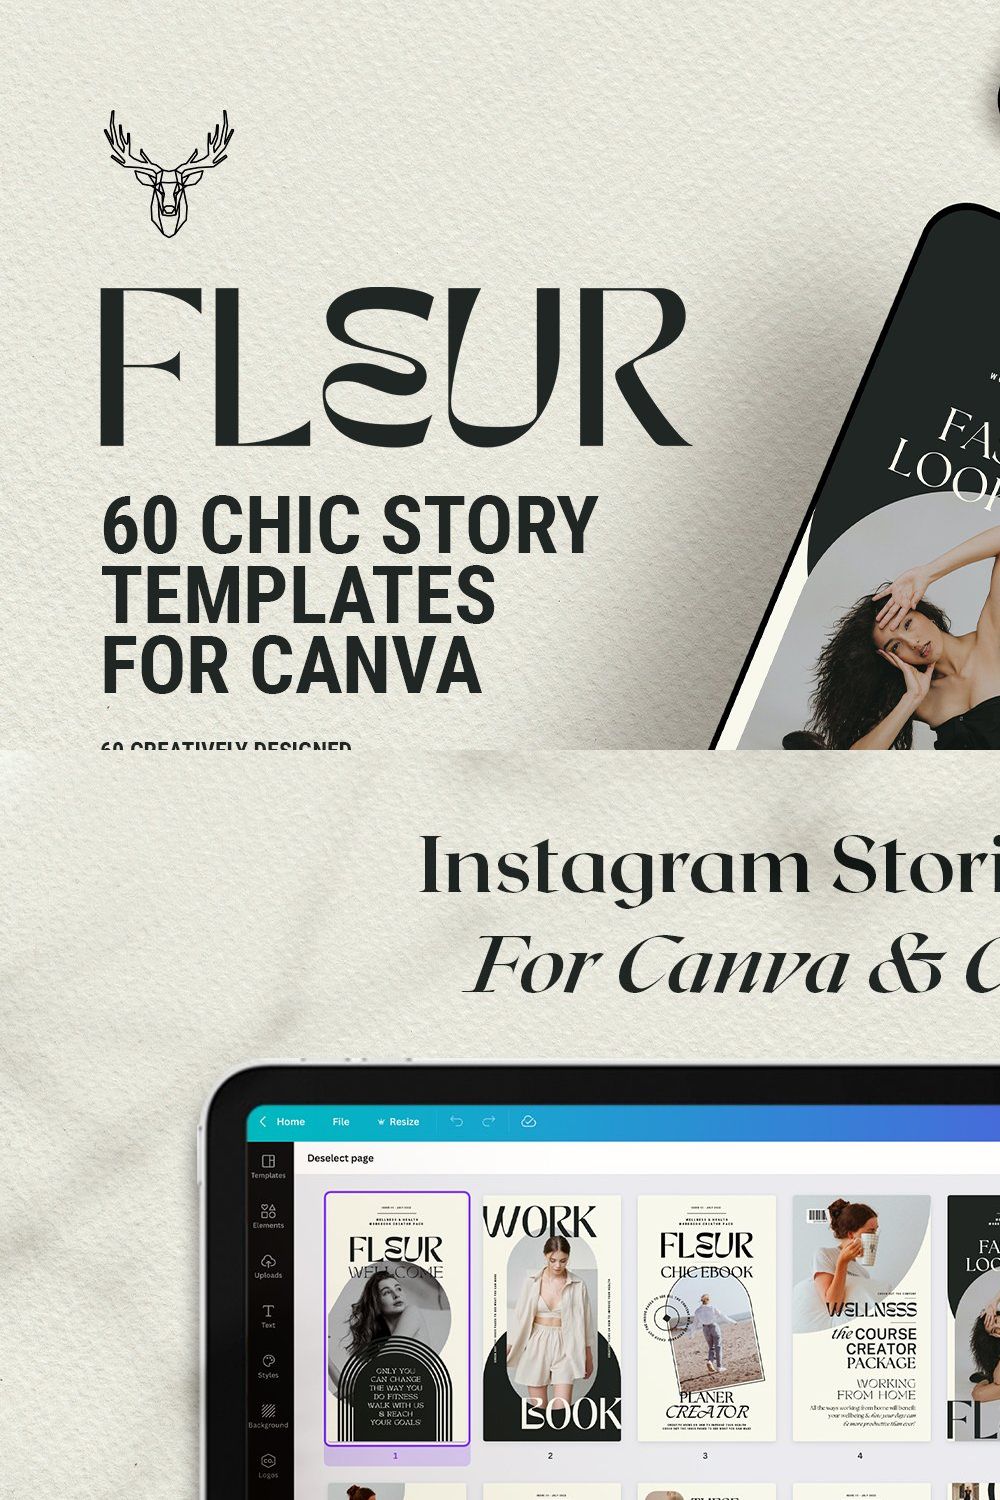 Fleur - Canva Instagram Stories pinterest preview image.